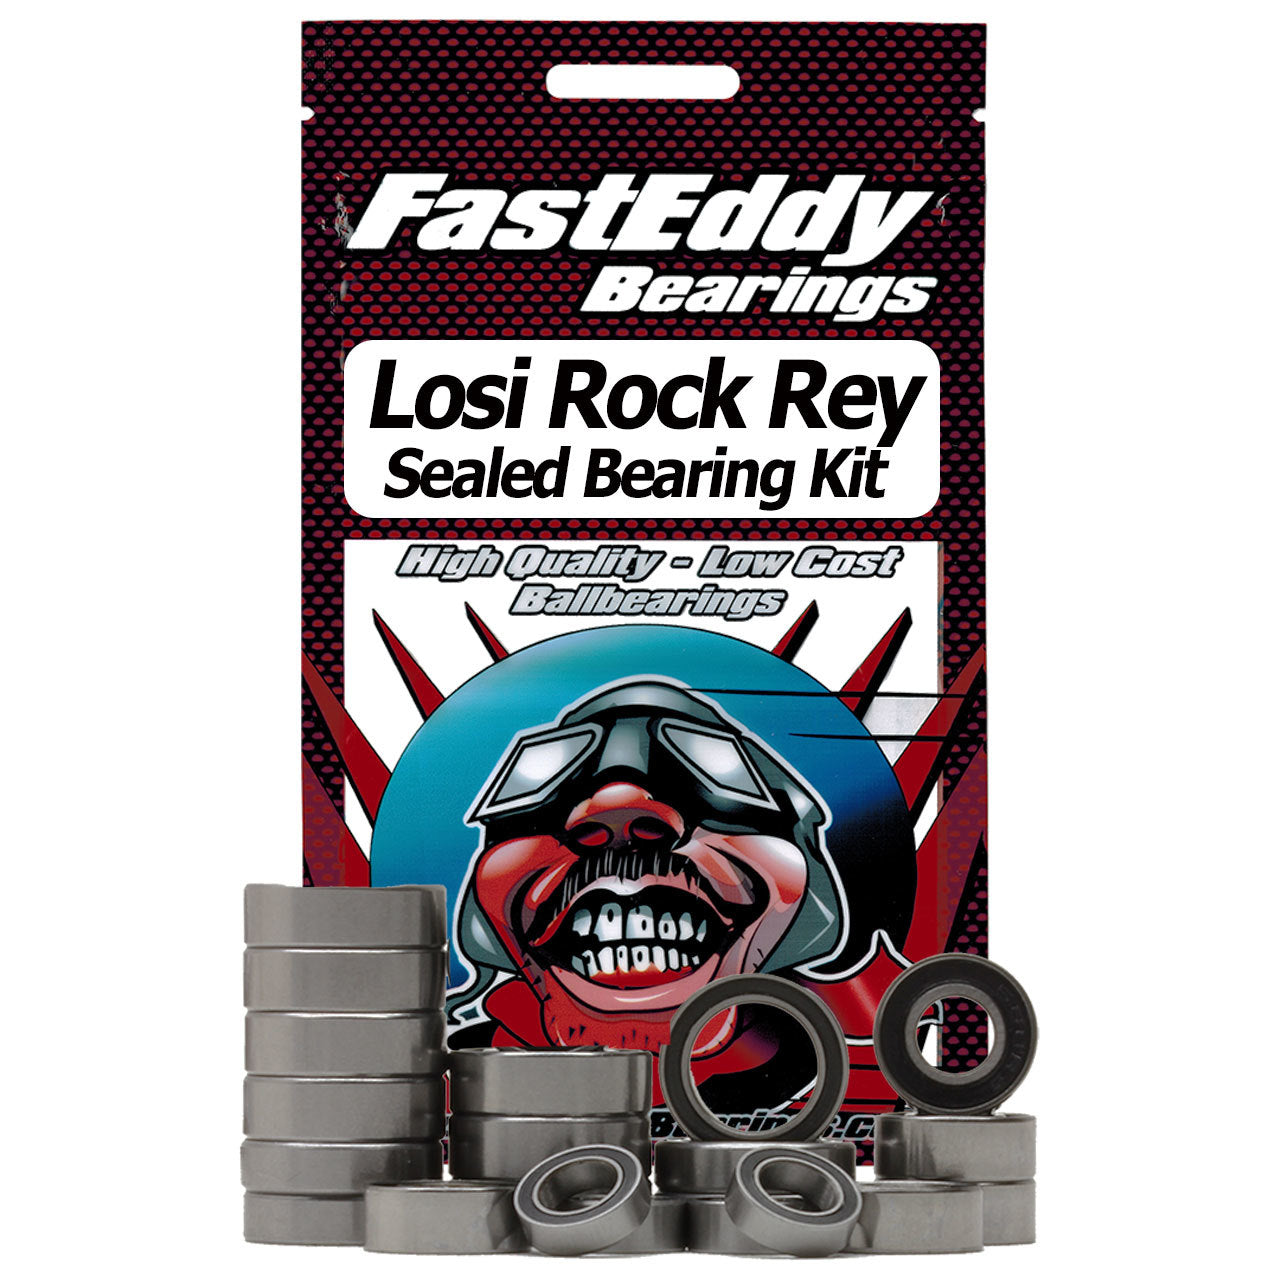 Losi Rock Rey Sealed Bearing Kit